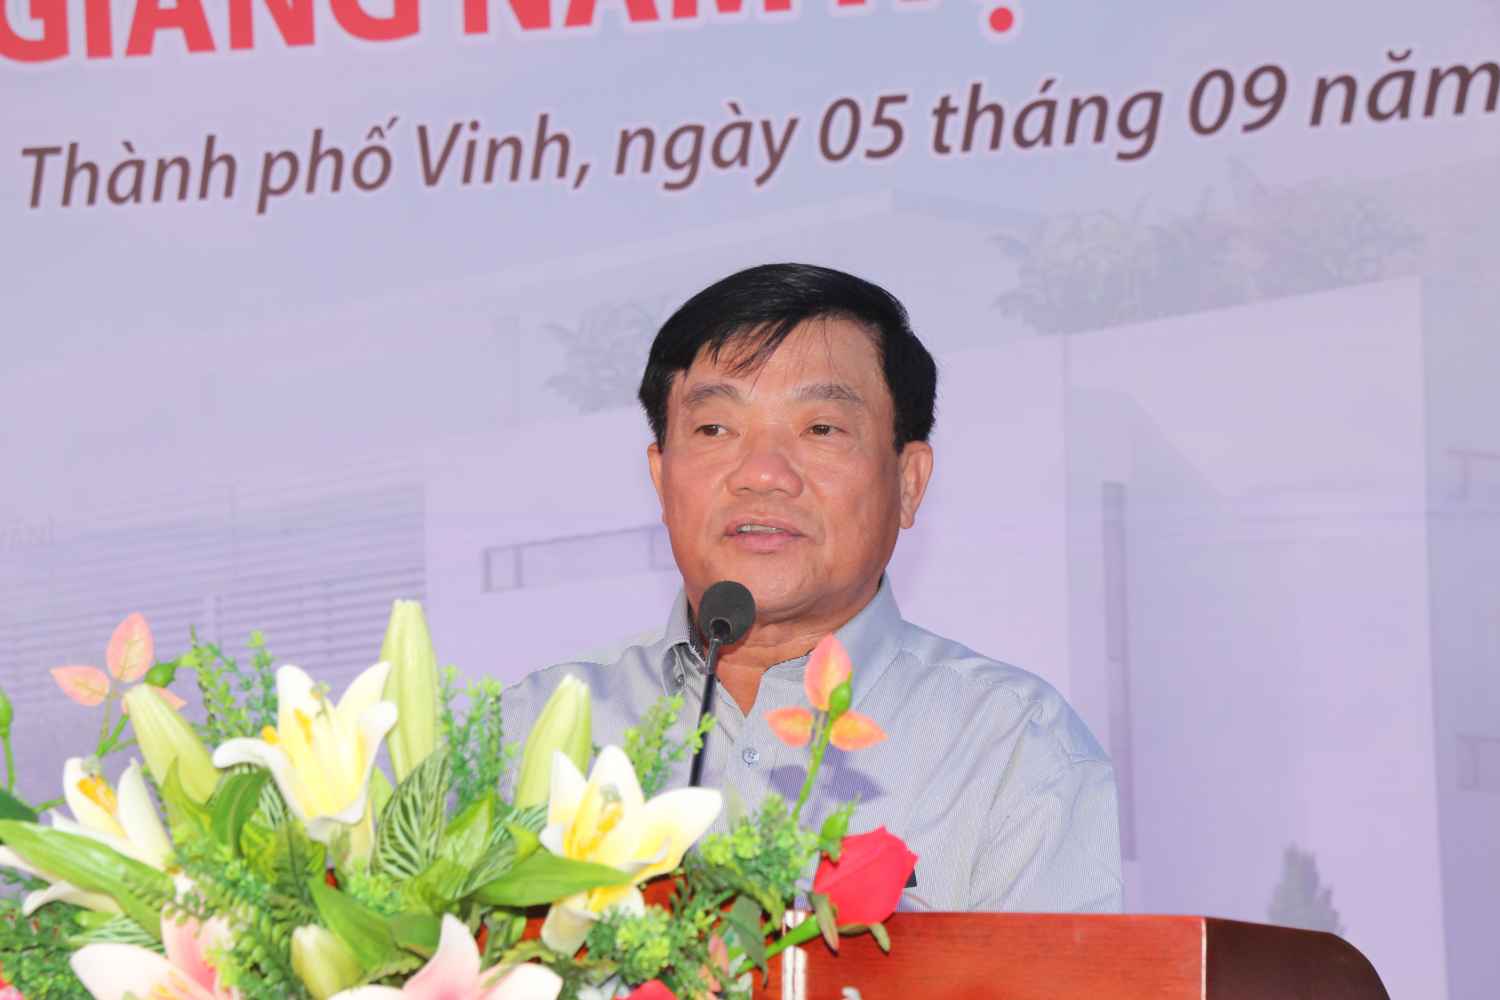 Bí thư Thành ủy Vinh - ông Võ Viết Thanh phát biểu tại lễ khai giảng